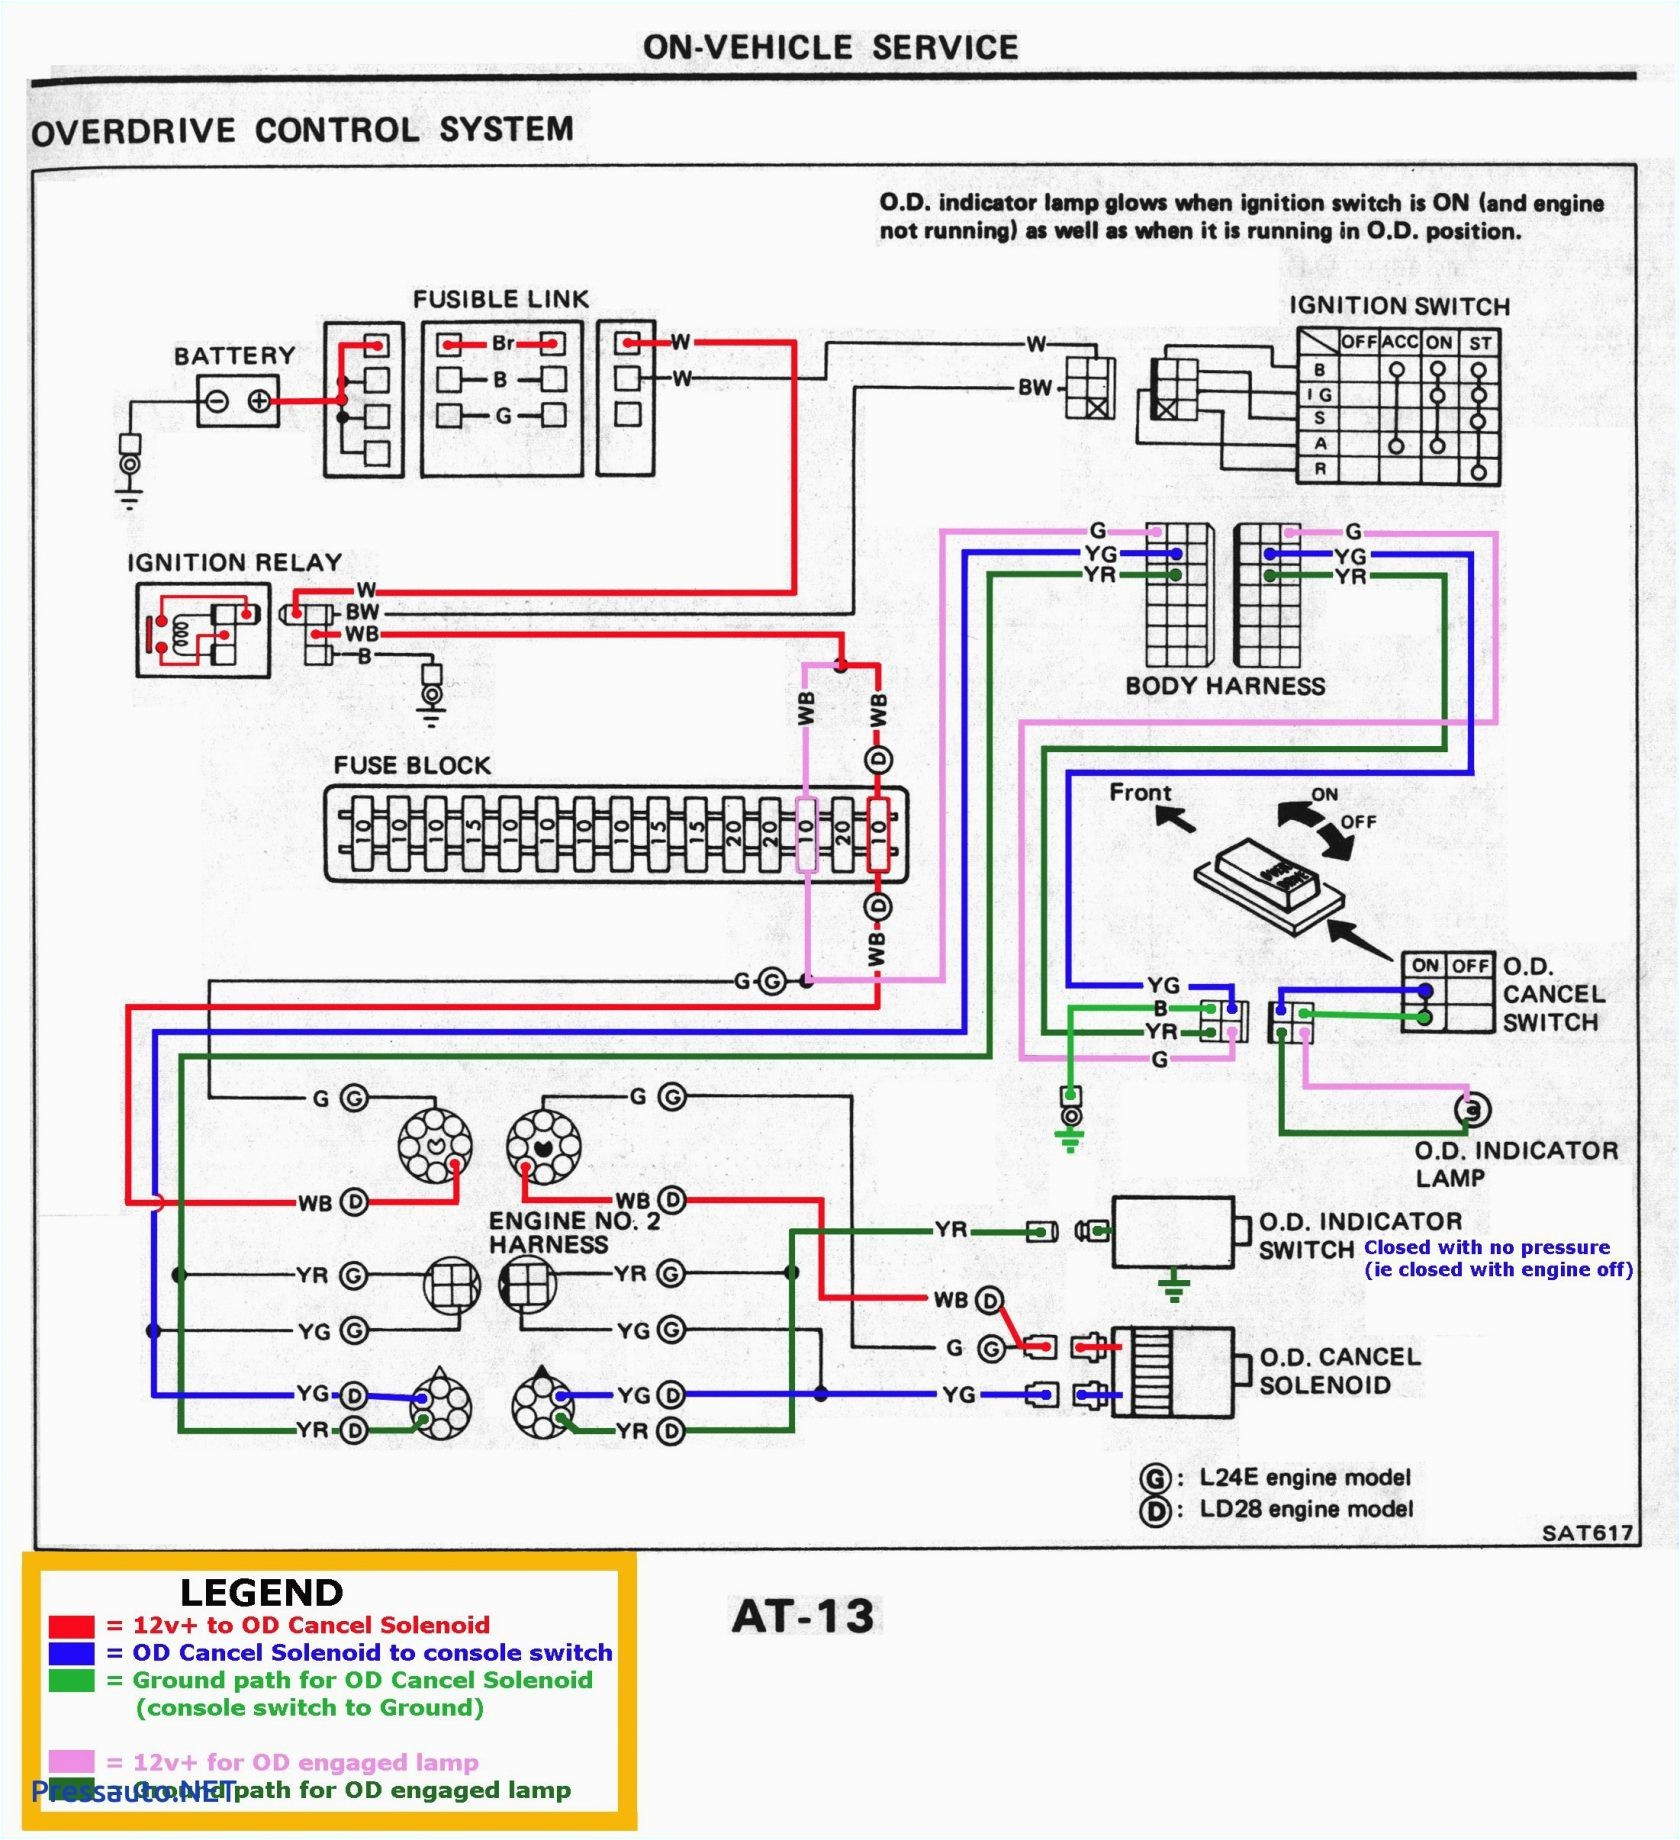 konami wire diagram book diagram schema konami wire diagram